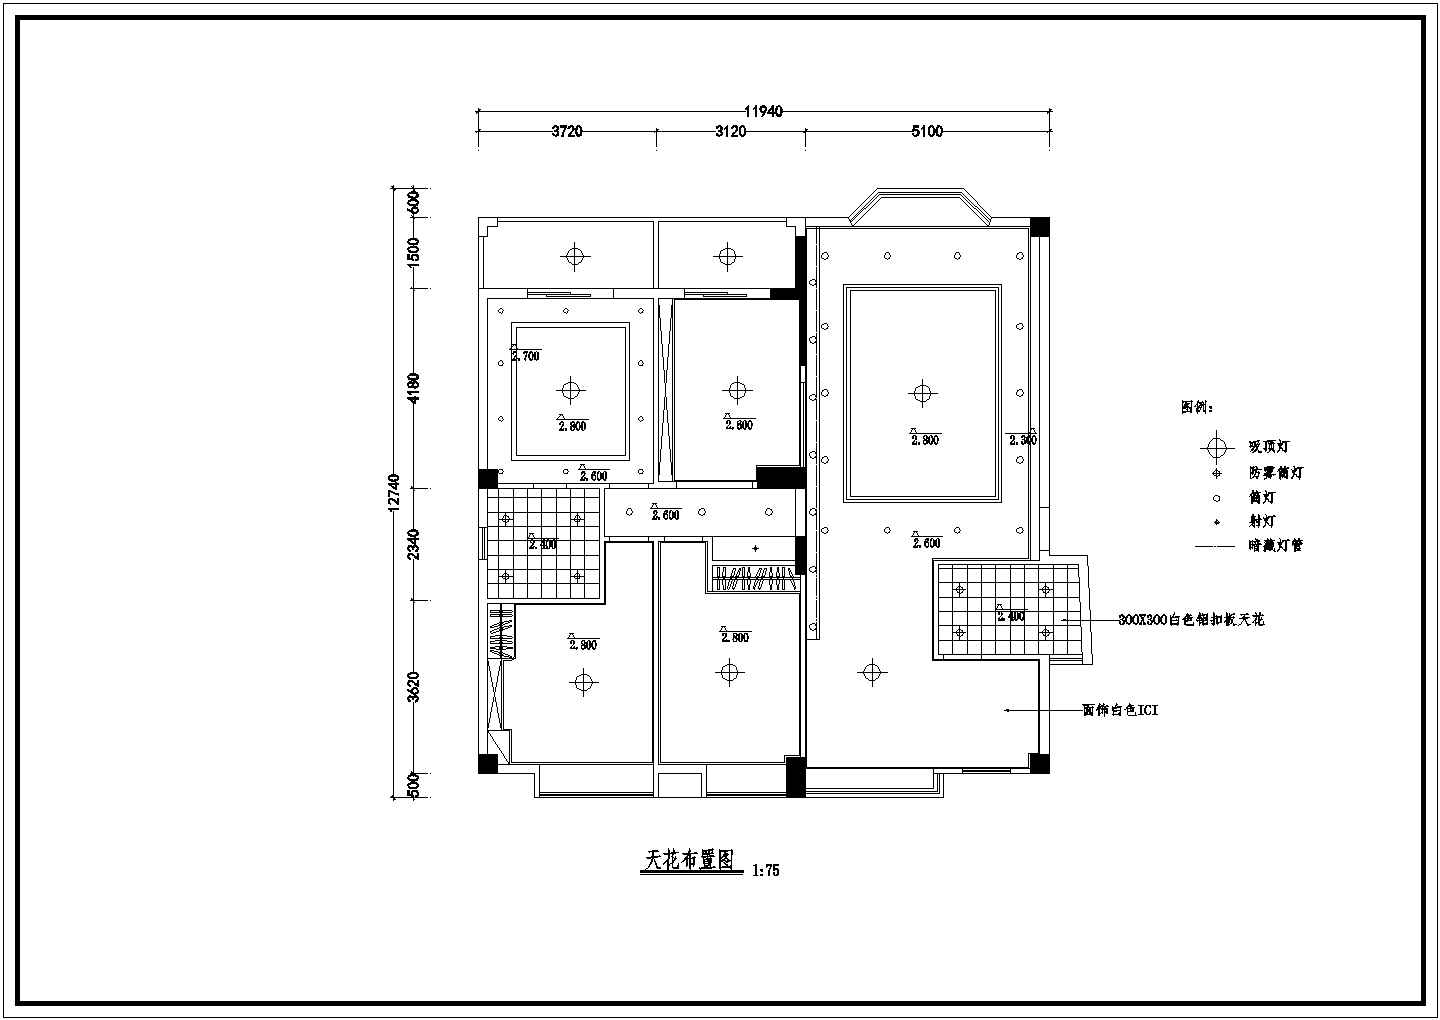 【南京】临江小区多层住宅楼全套装修设计cad图纸(含家具平面布置图)